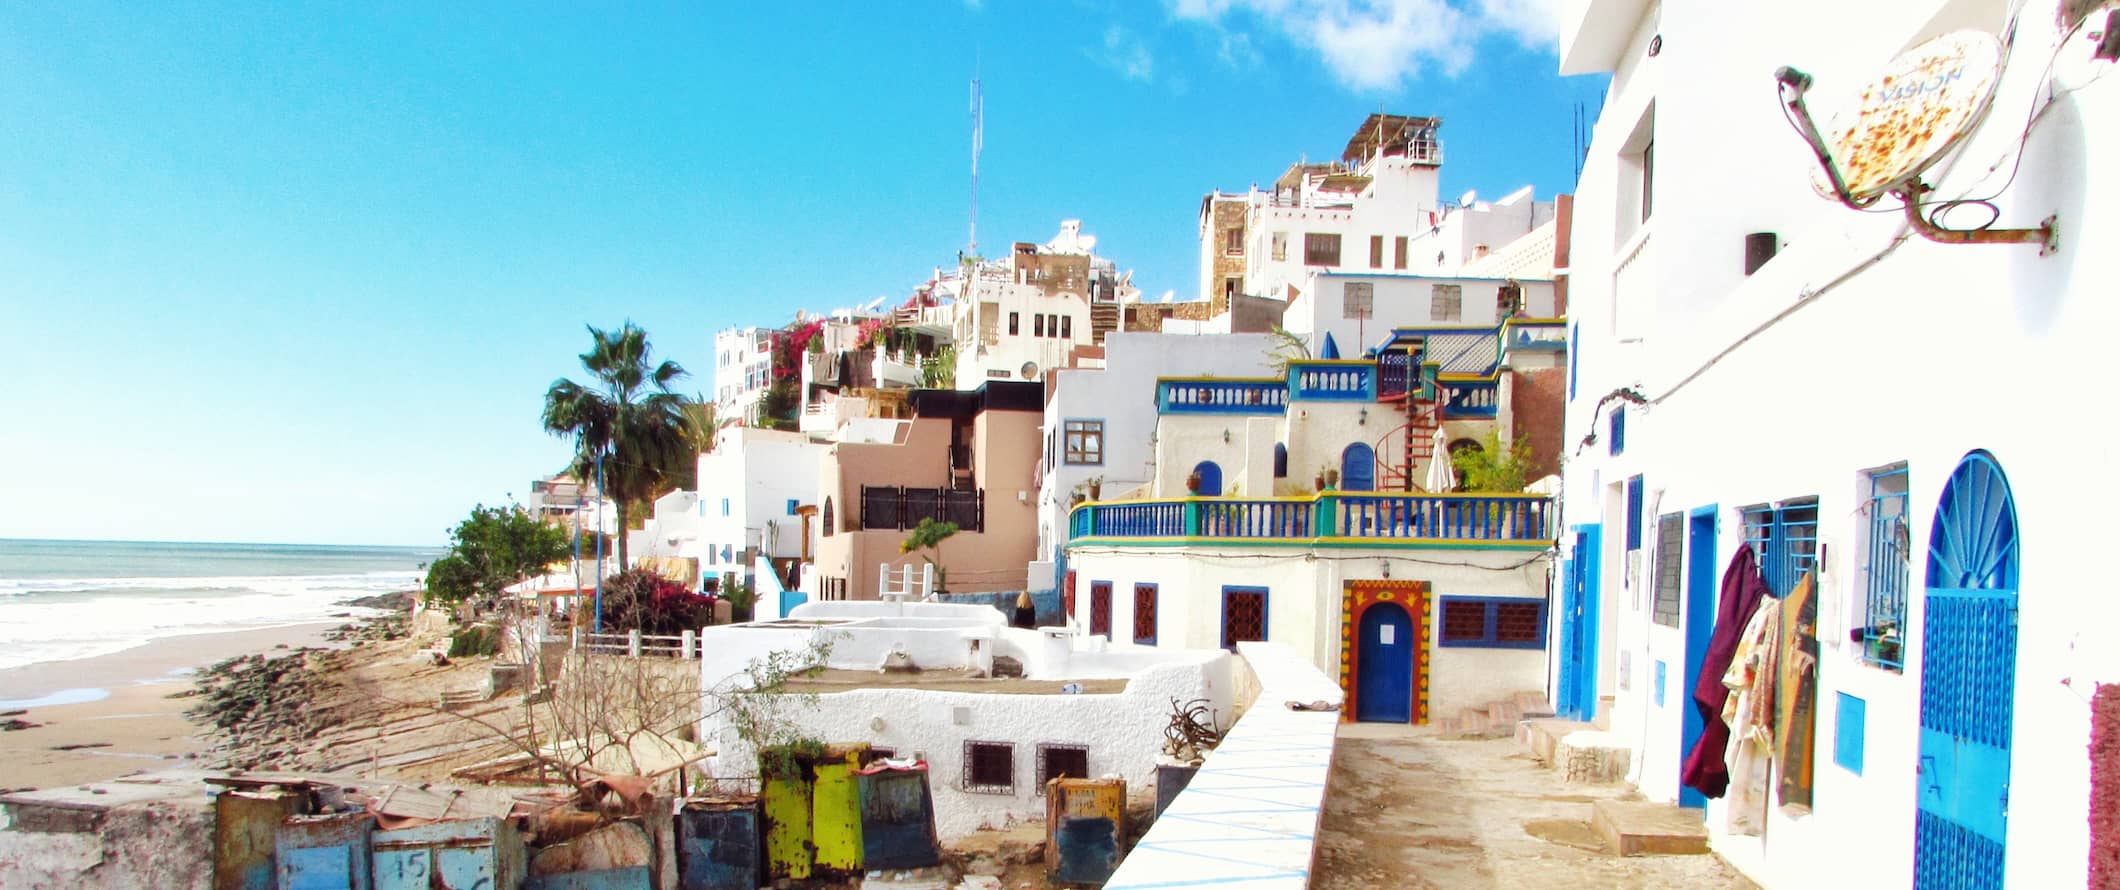 Vista para o mar numa pequena aldeia perto da praia no ensolarado Marrocos